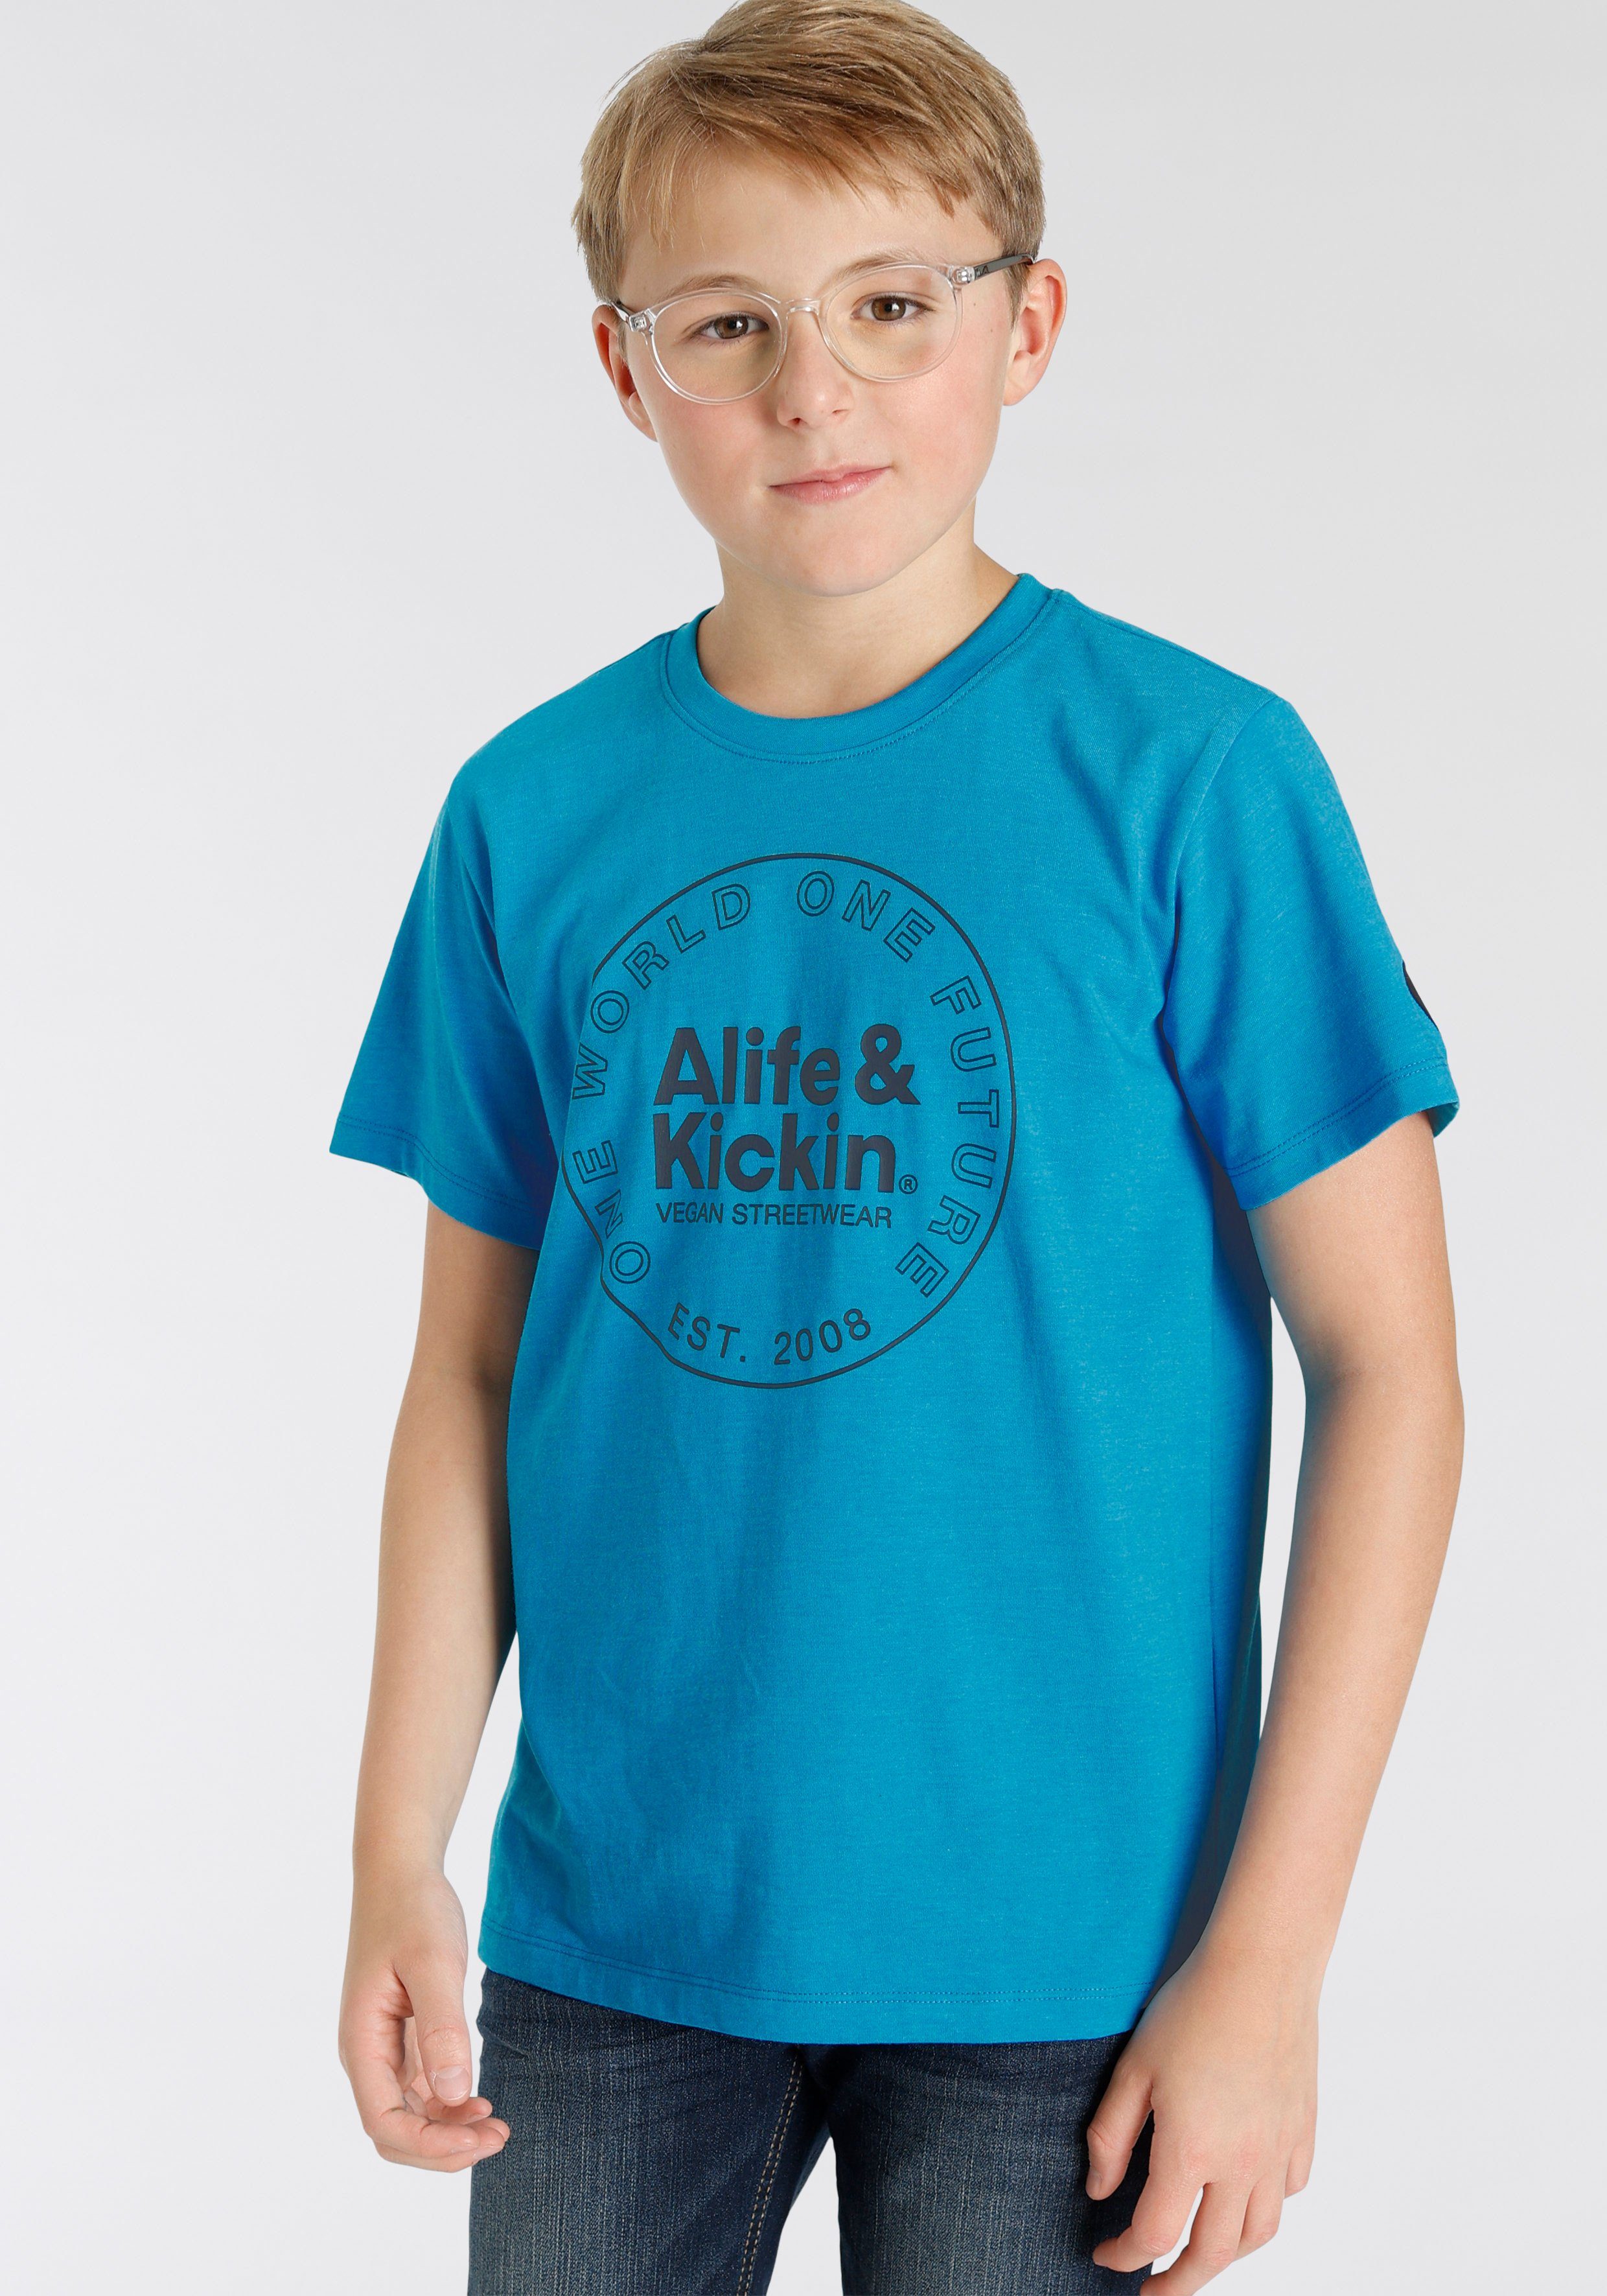 Alife & Kickin T-Shirt Logo-Print in melierter Qualität, NEUE MARKE! Alife&Kickin für Kids | T-Shirts